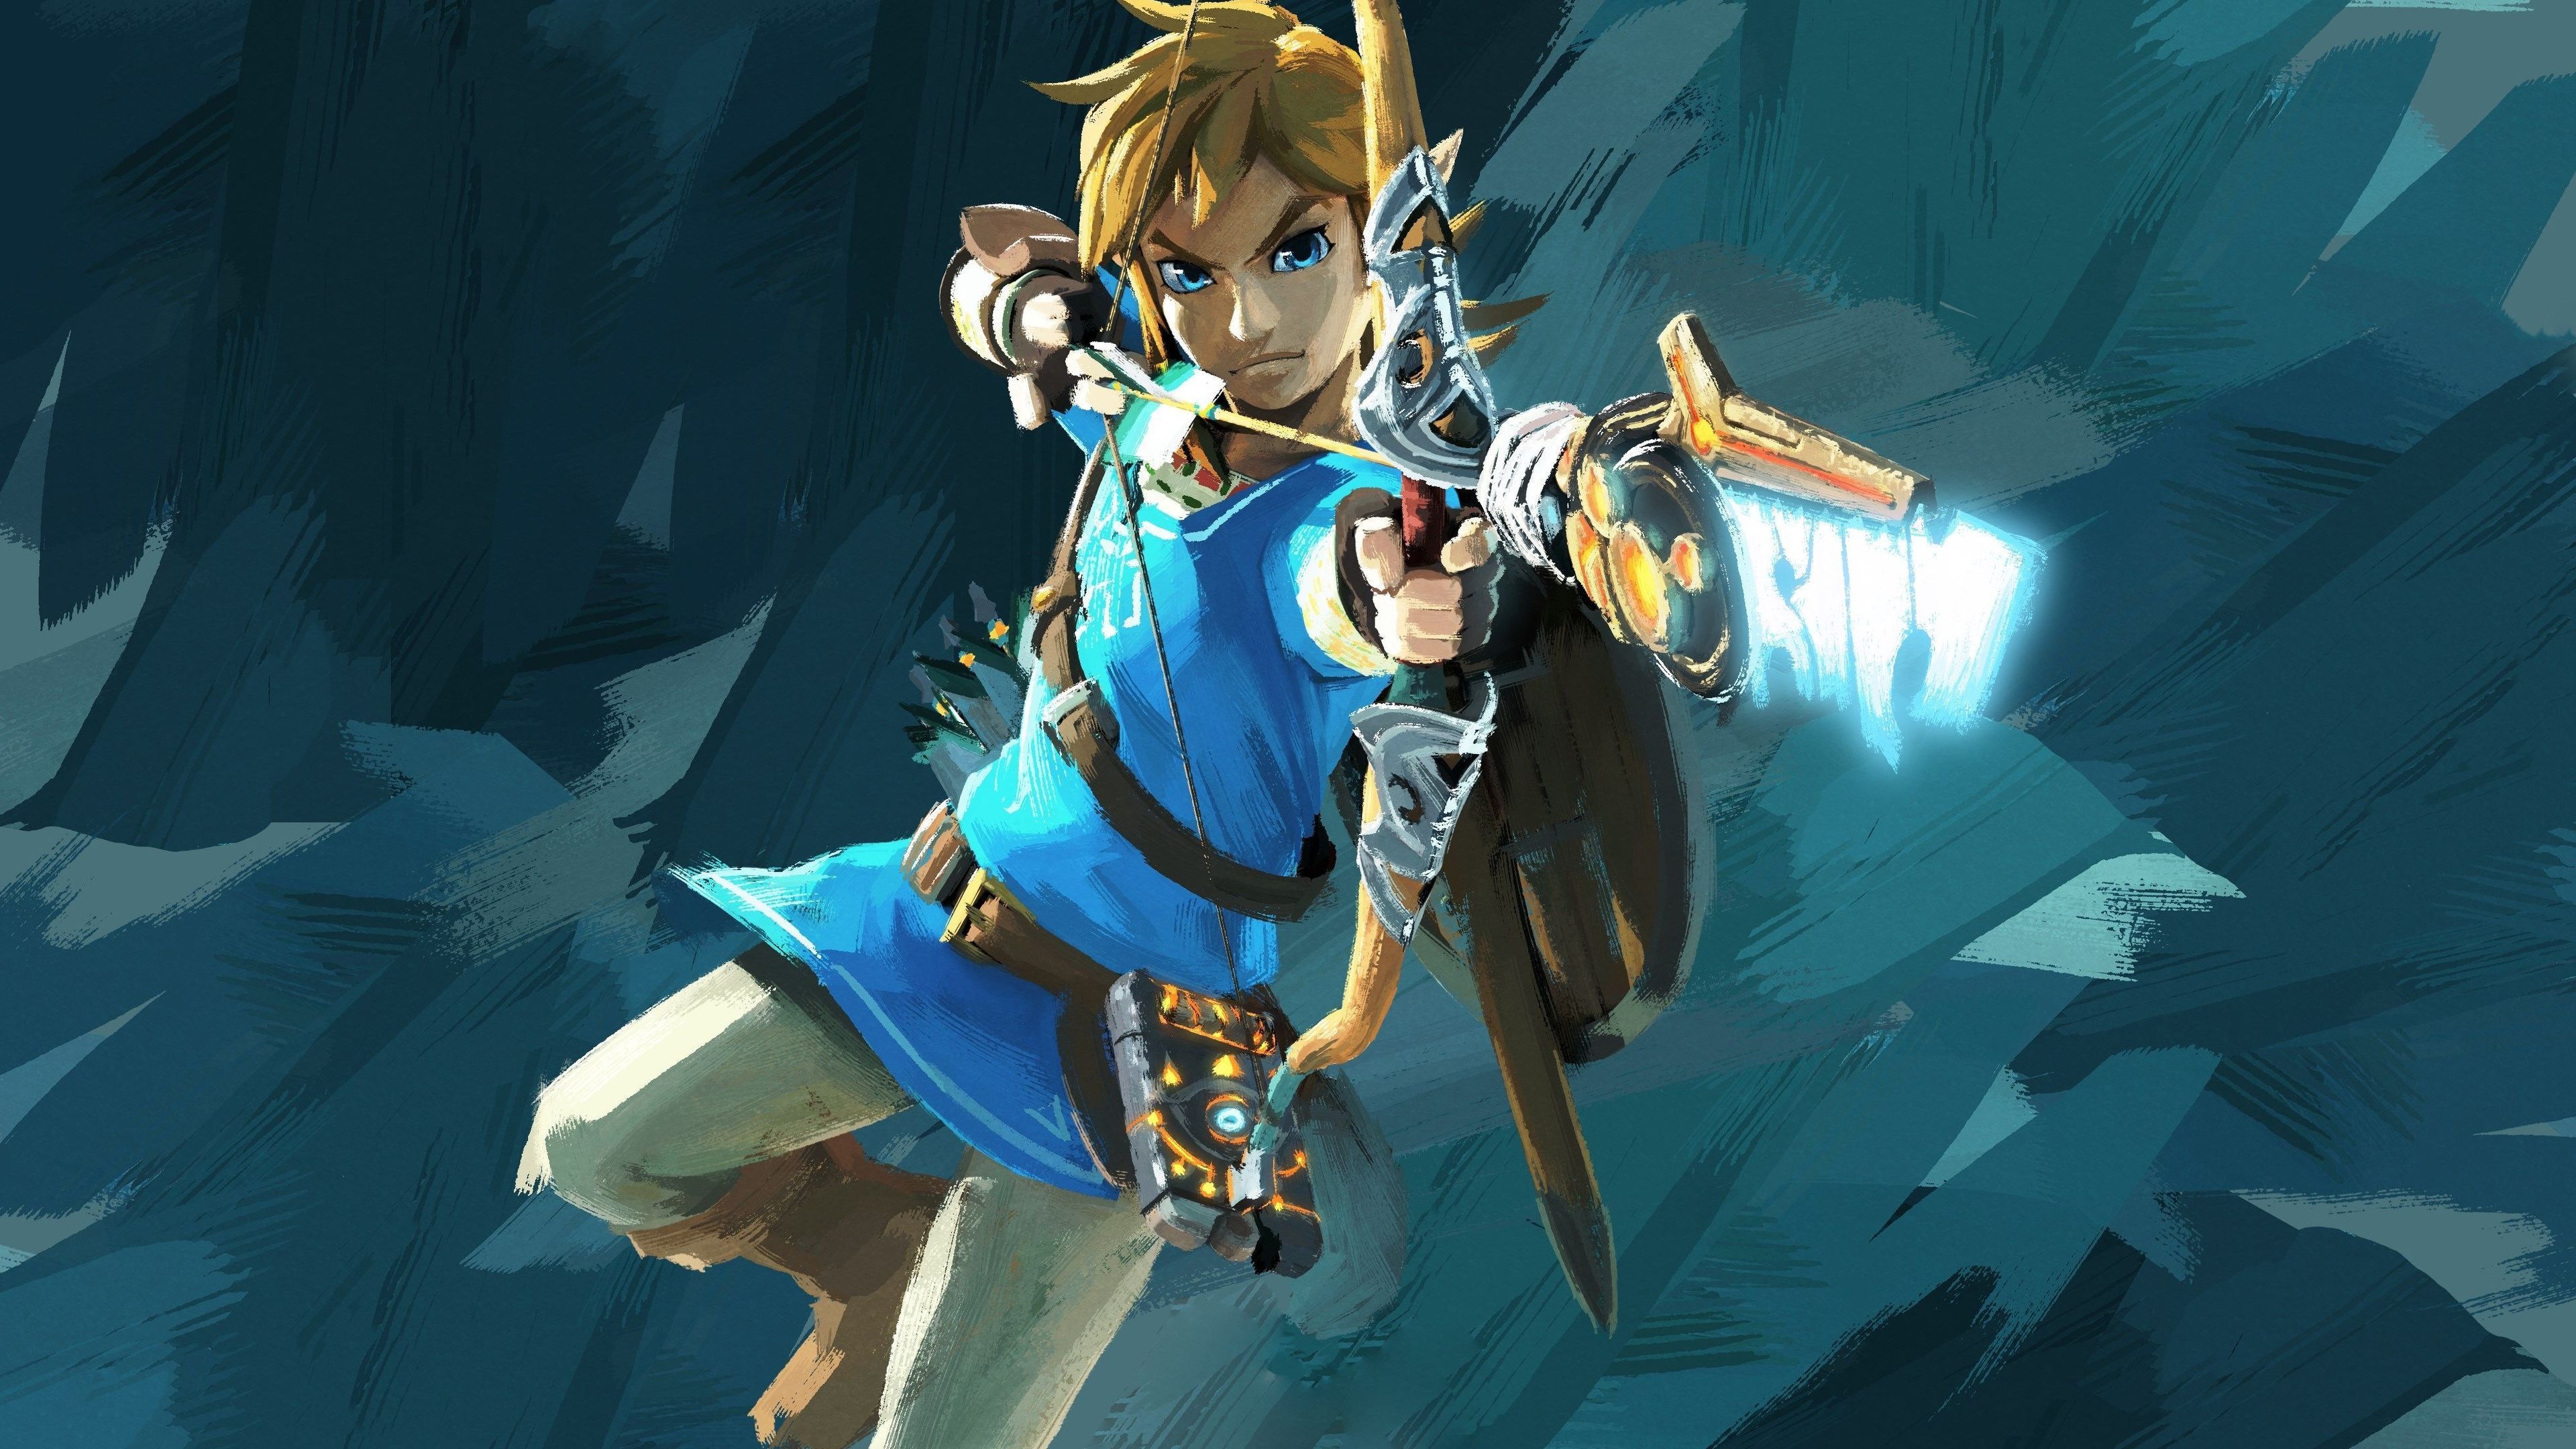 Link, Zelda Wallpapers, Video Game, Fantasy World, Adventure, 3840x2160 4K Desktop